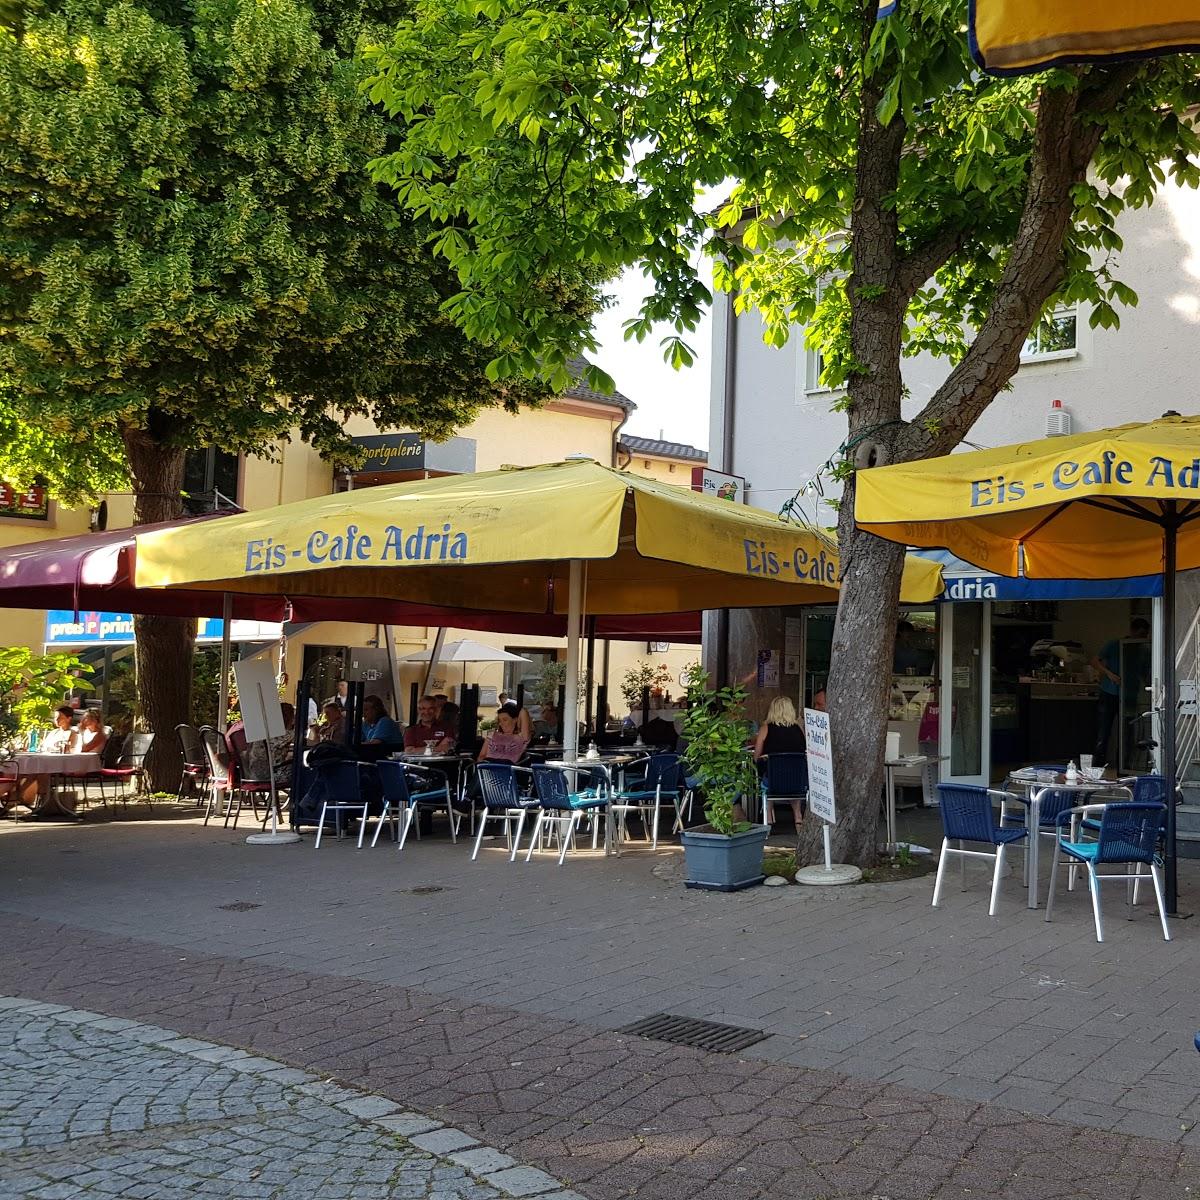 Restaurant "Eiscafé Adria Breisach" in Breisach am Rhein